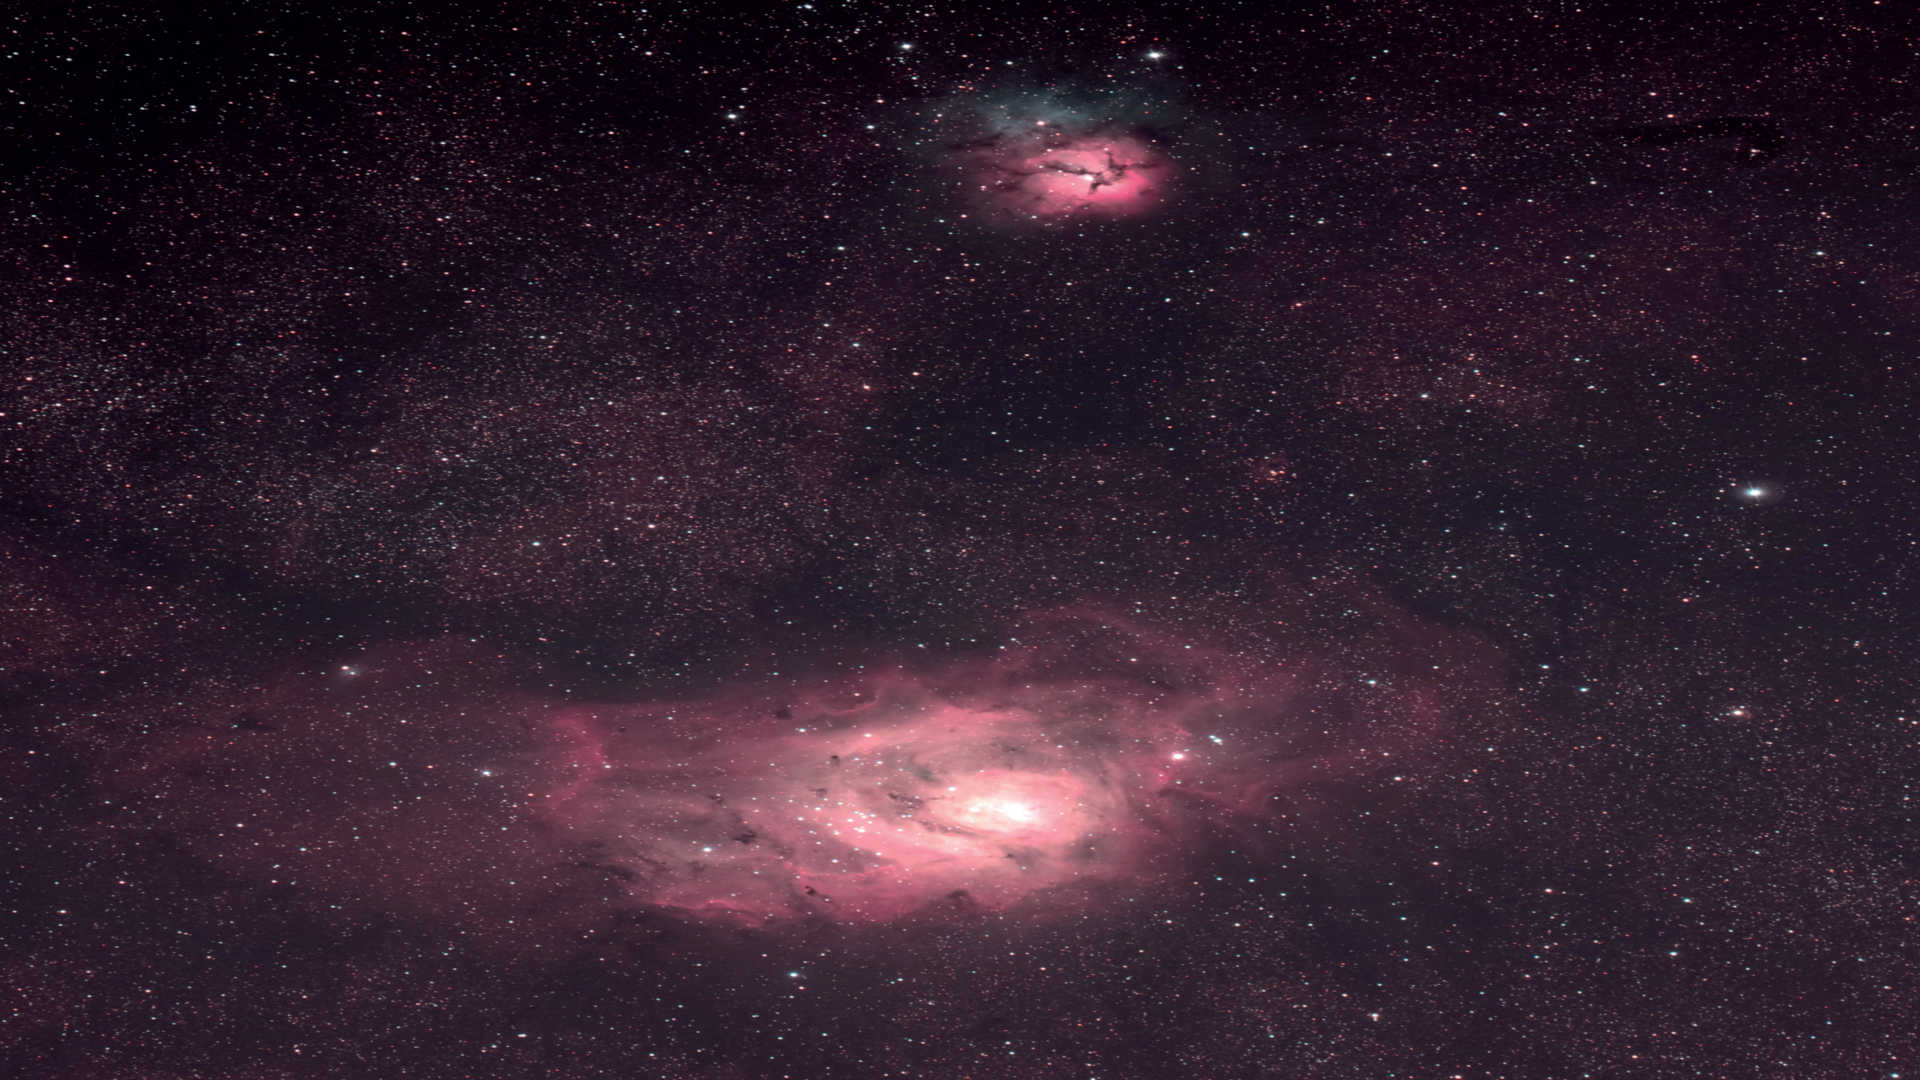 Der Lagunennebel (Messier
8) zusammen mit dem Trifidnebel
(Messier 20). Die Aufnahme
entstand mit einem Astrografen auf
einer parallaktischen Montierung. Das
Summenbild setzt sich aus acht Aufnahmen
mit einer Belichtungszeit von
je 450 Sekunden zusammen.